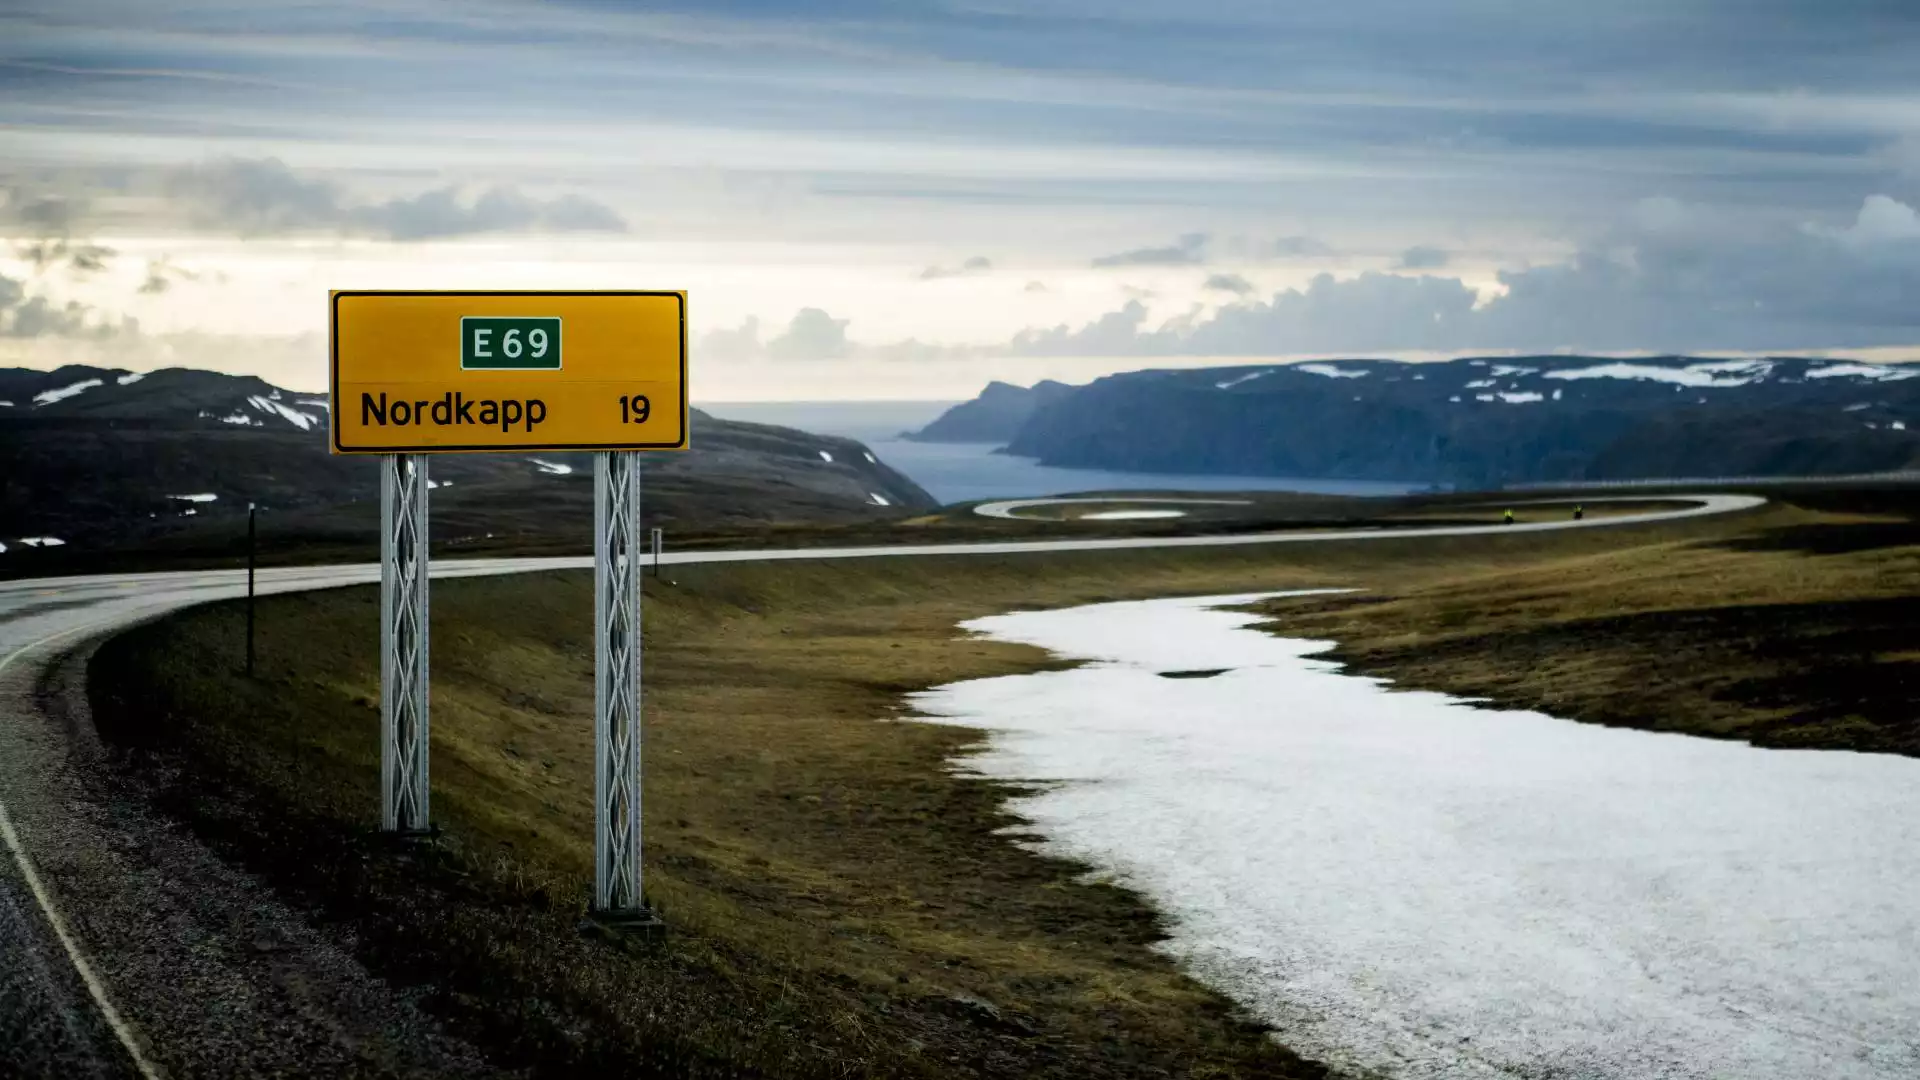 De grens over naar Noorwegen